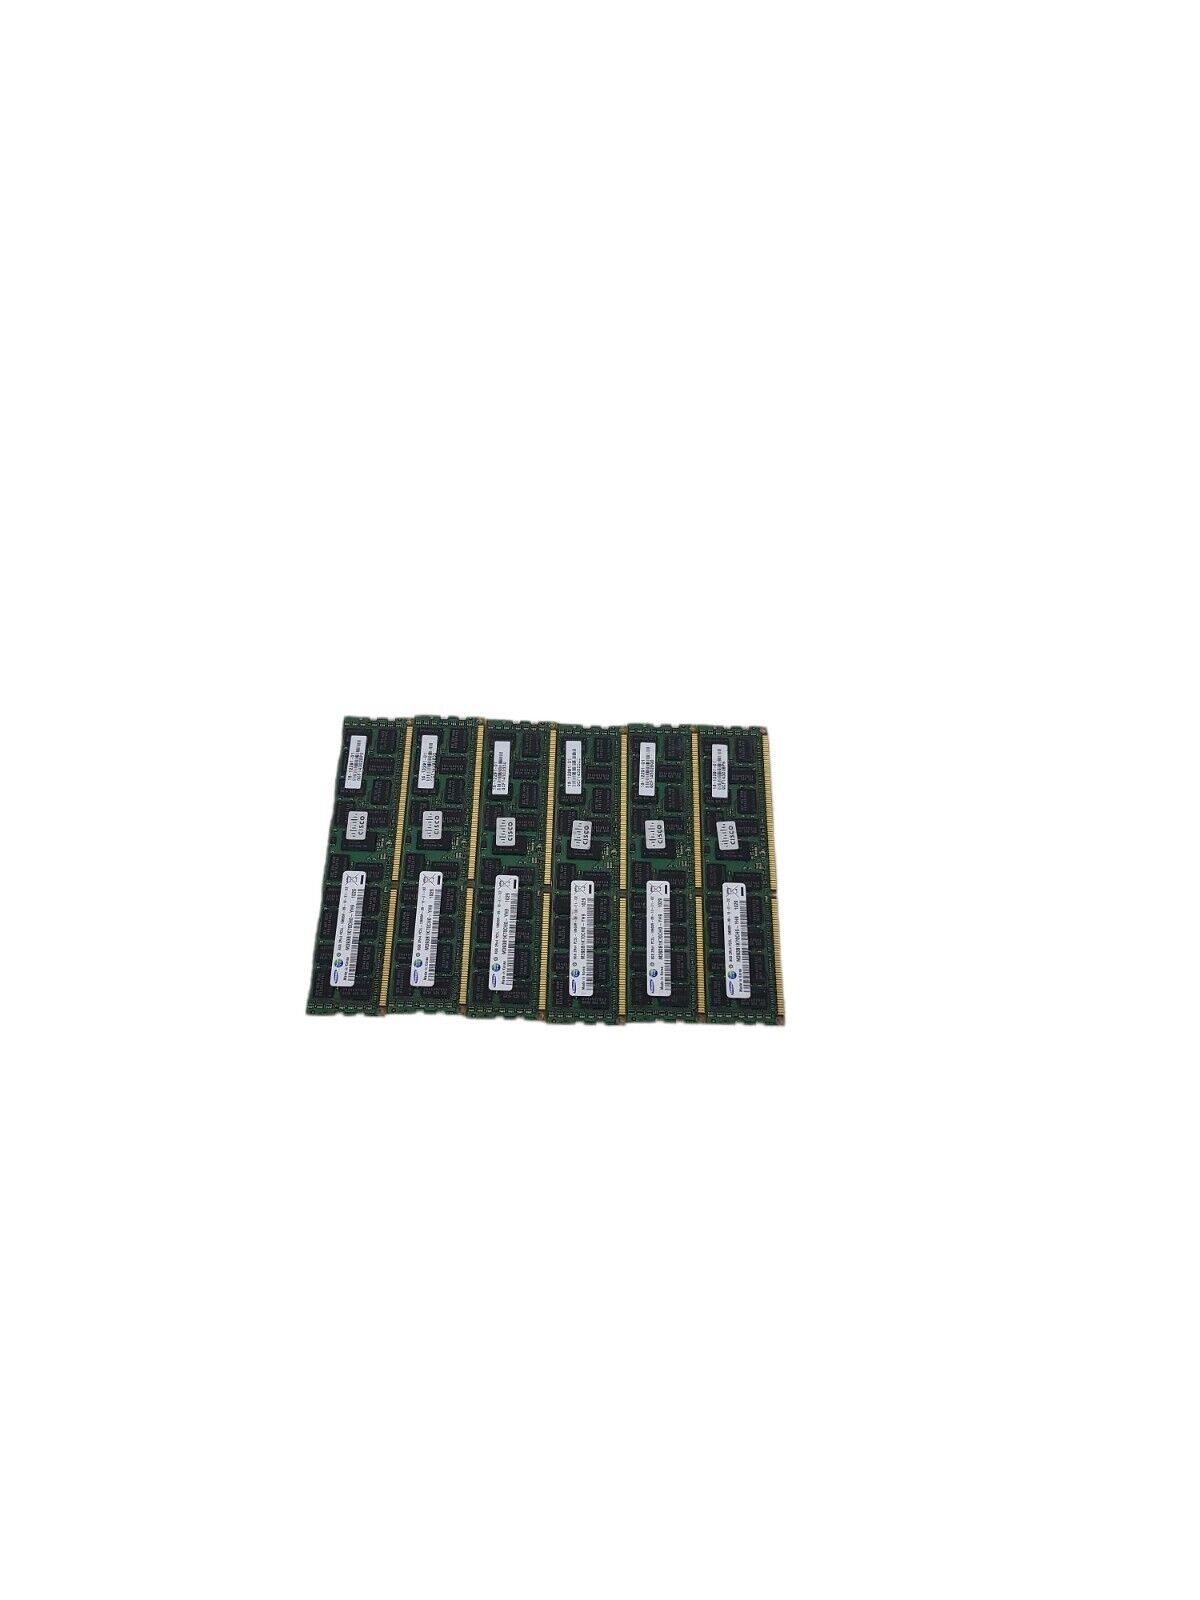 Lot of 6 Samsung 8GB 2Rx4 PC3L-10600R Server RAM M393B1K70DH0-YH9 (AMX)